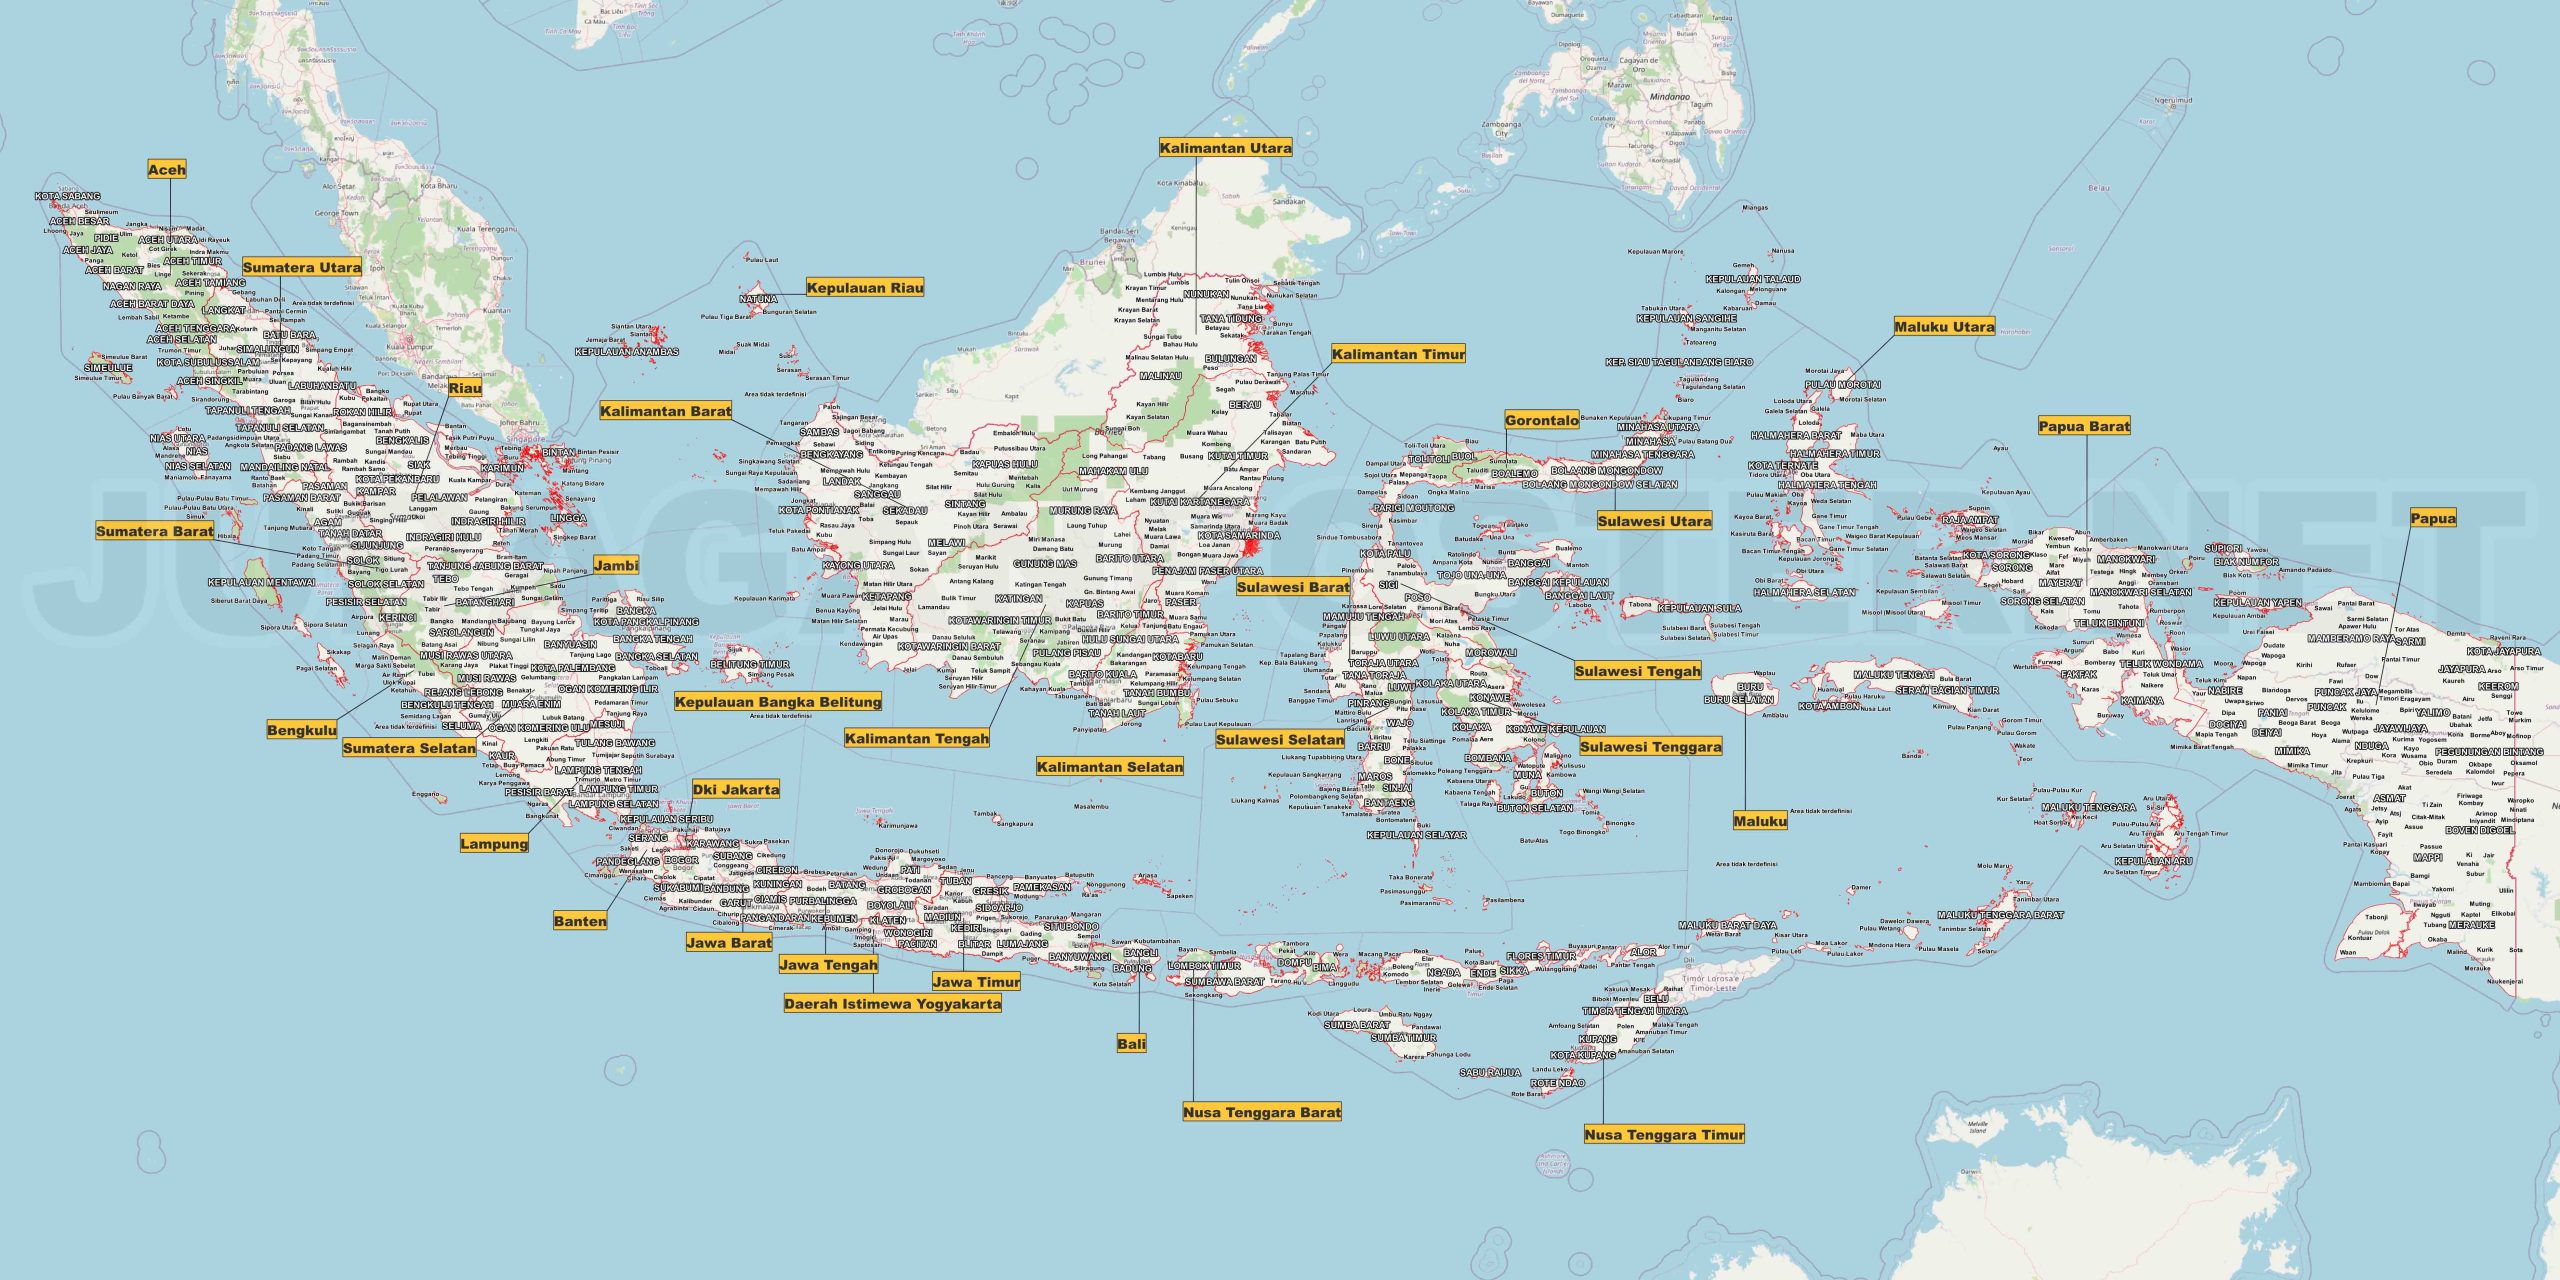 Peta Indonesia Lengkap Ukuran Besar dan Jelas: Panduan Terperinci Nusantara